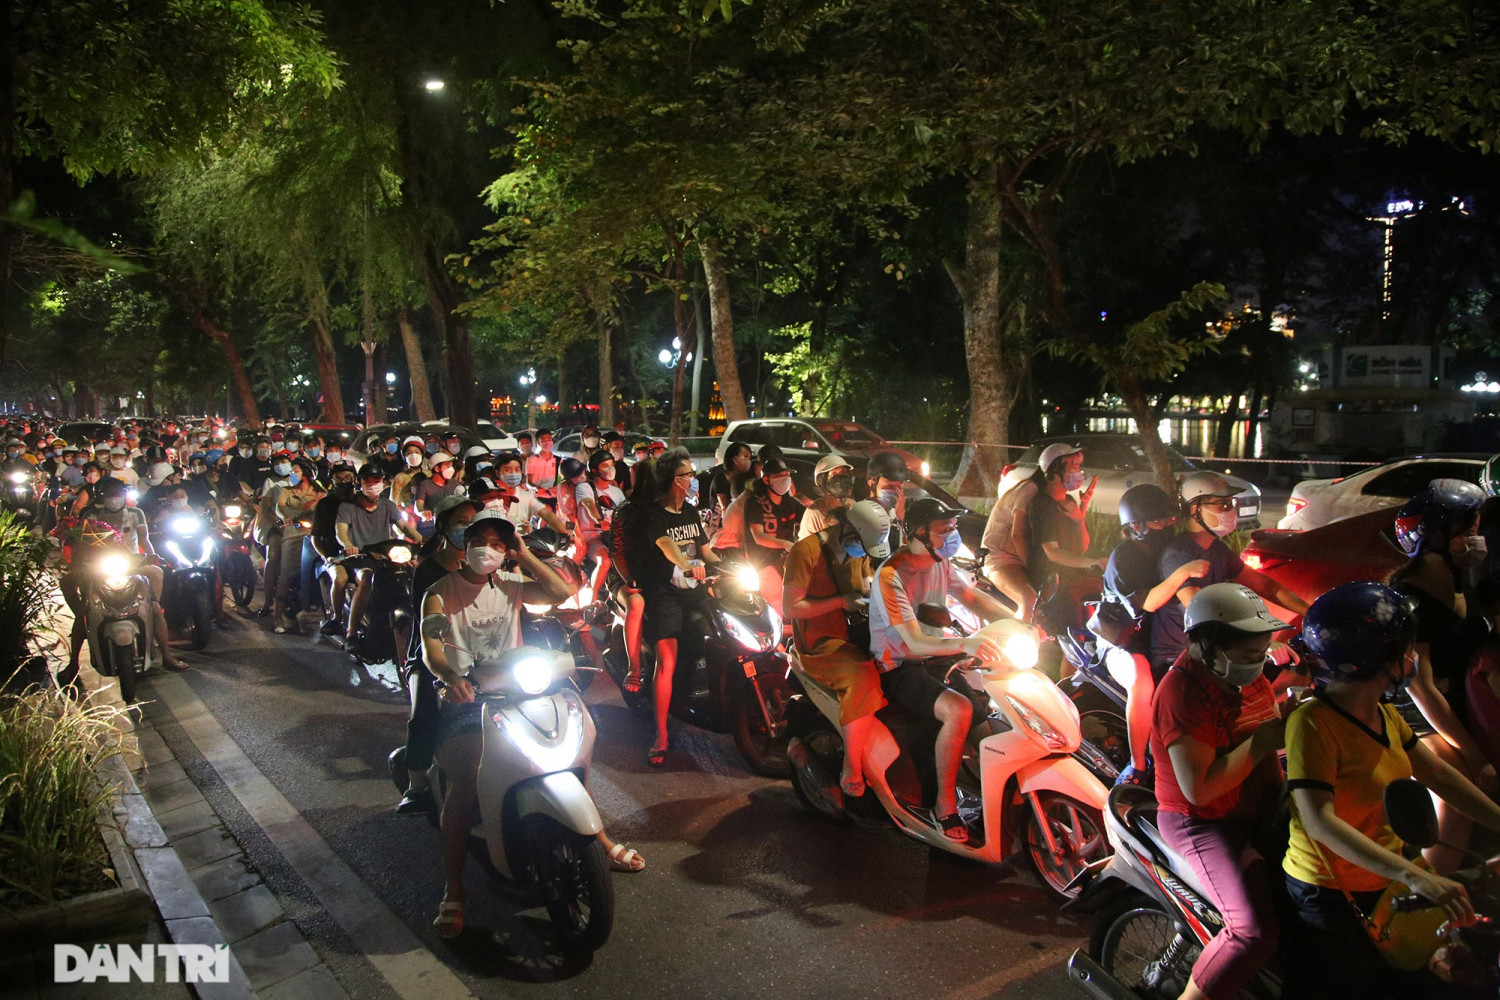 Người và xe đông đặc trong đêm Trung thu khi Hà Nội vừa hết giãn cách sau hơn 2 tháng - Ảnh: Hữu Nghị (dantri.com.vn)